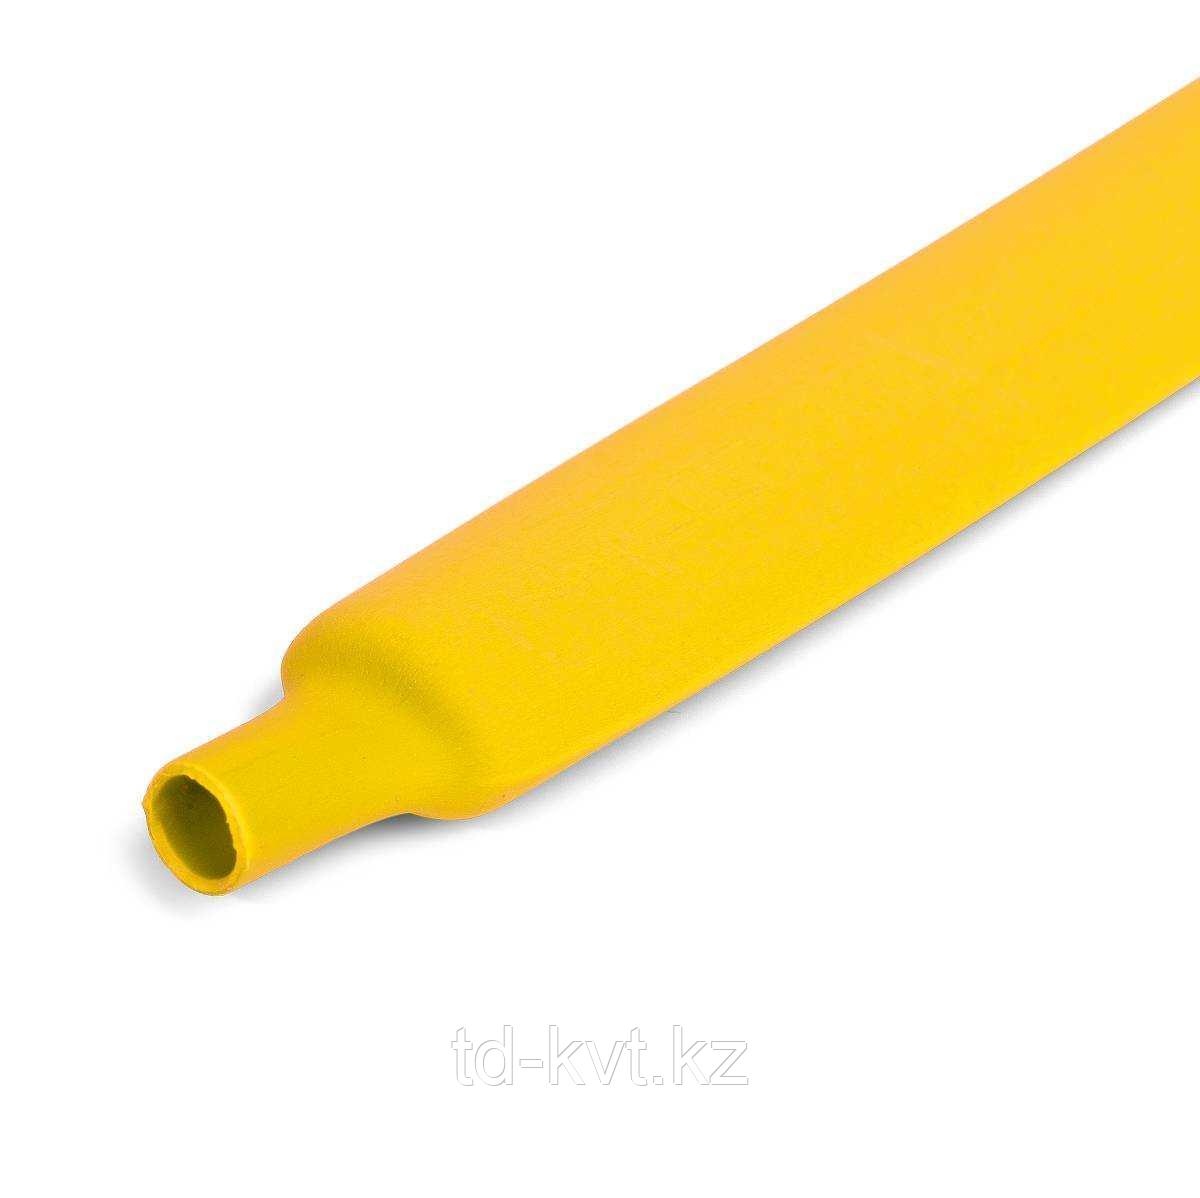 Цветная термоусадочная трубка с коэффициентом усадки 2:1 ТУТ (HF)-30/15, желт